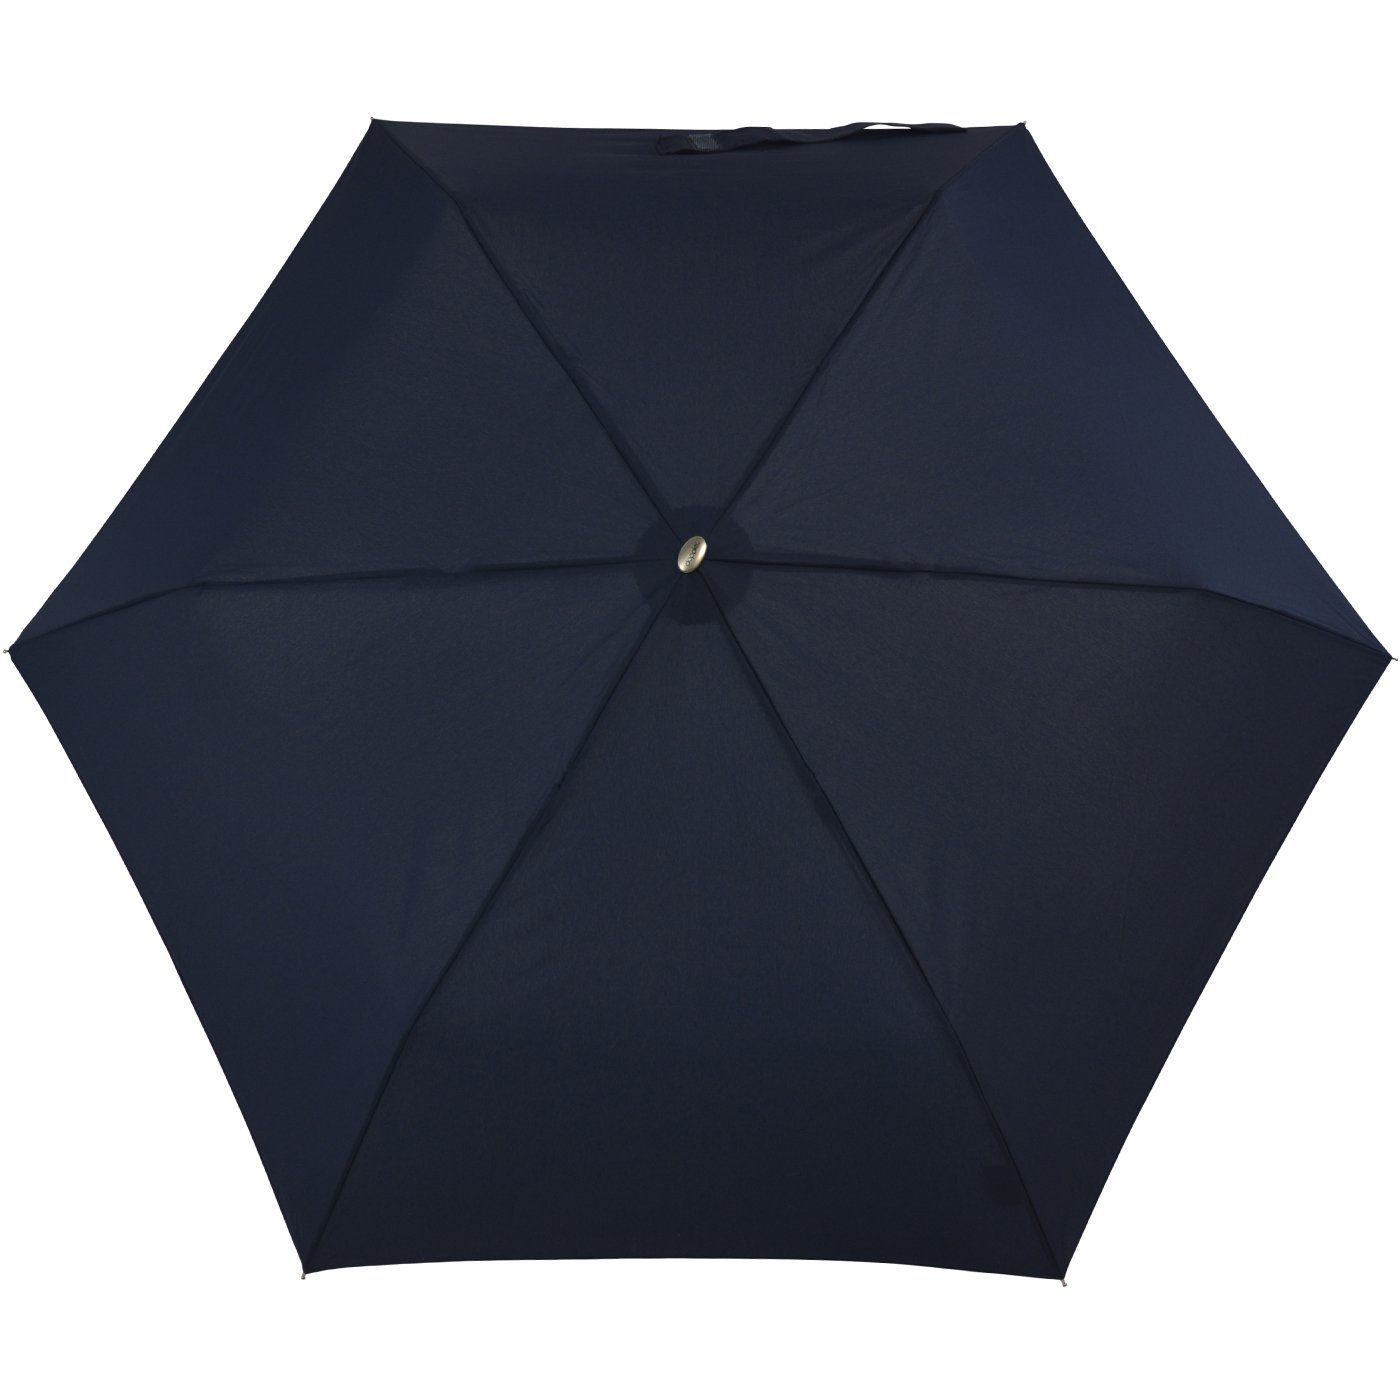 und Platz für treue jede navy findet Tasche, Begleiter leichter ein doppler® dieser Schirm überall flacher Langregenschirm